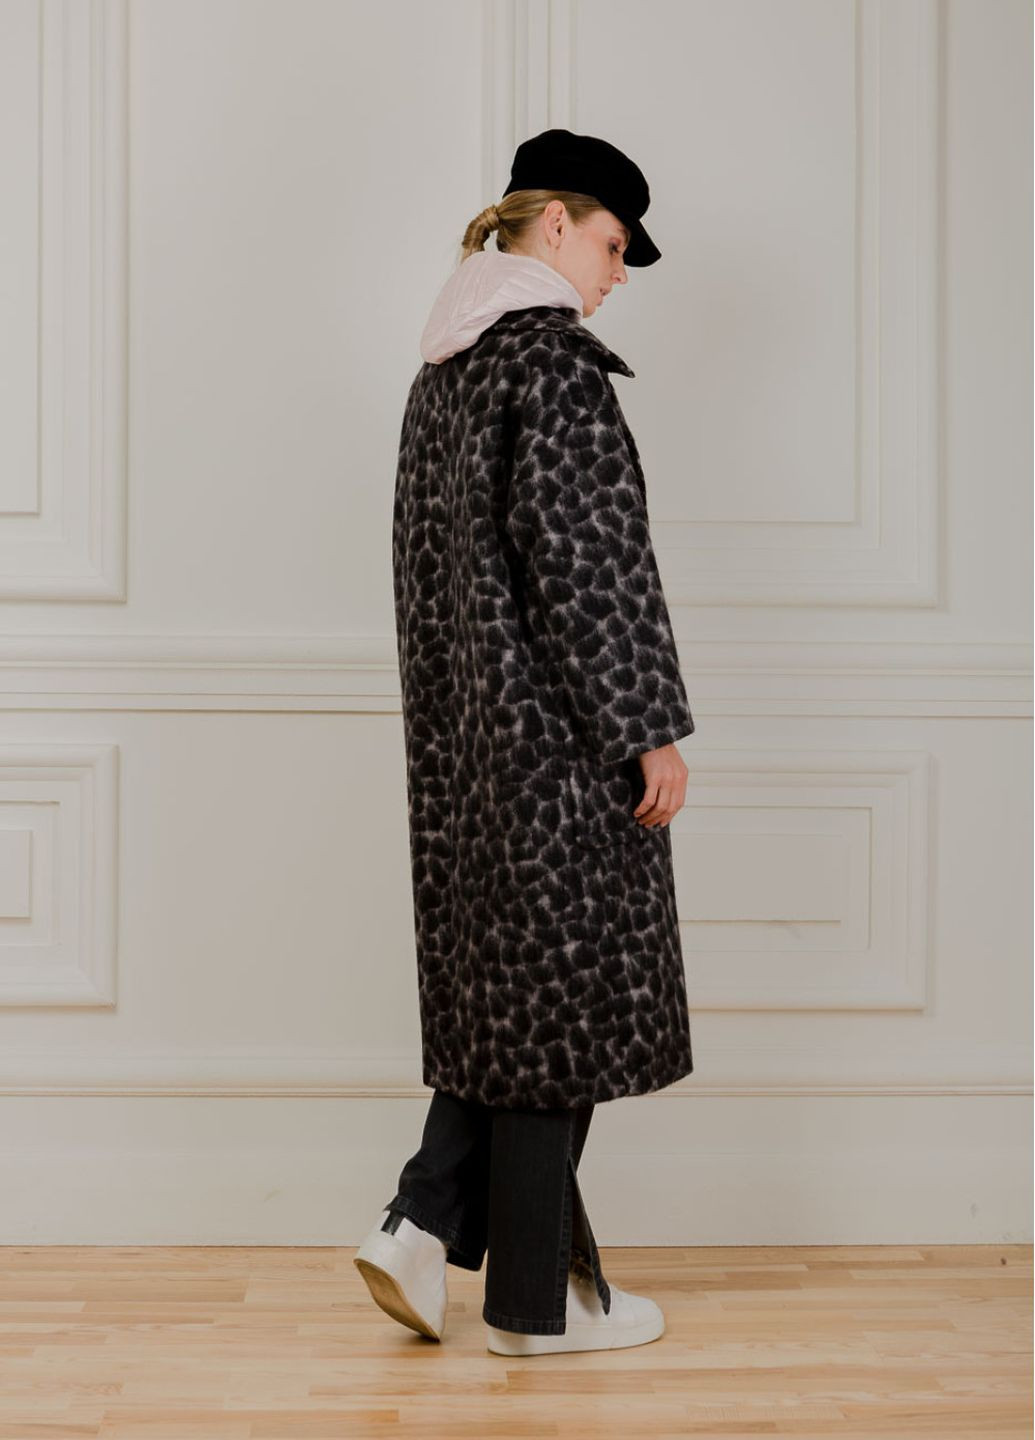 Черное демисезонное Меховое пальто с принтом жирафа Мэди двубортное Dolcedonna